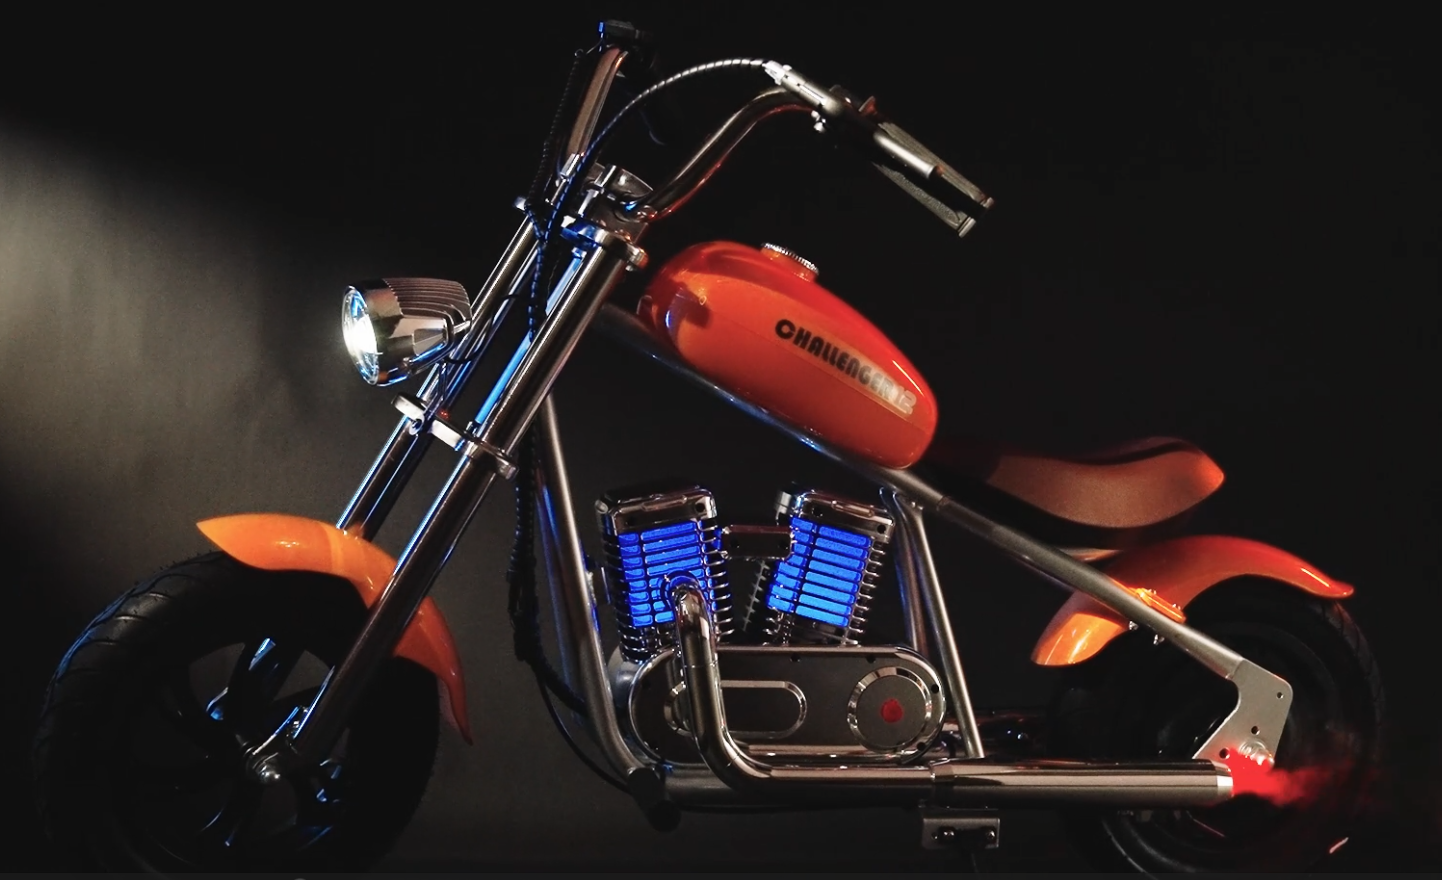 HYPER GOGO Brand Designed Motorcycles For Children